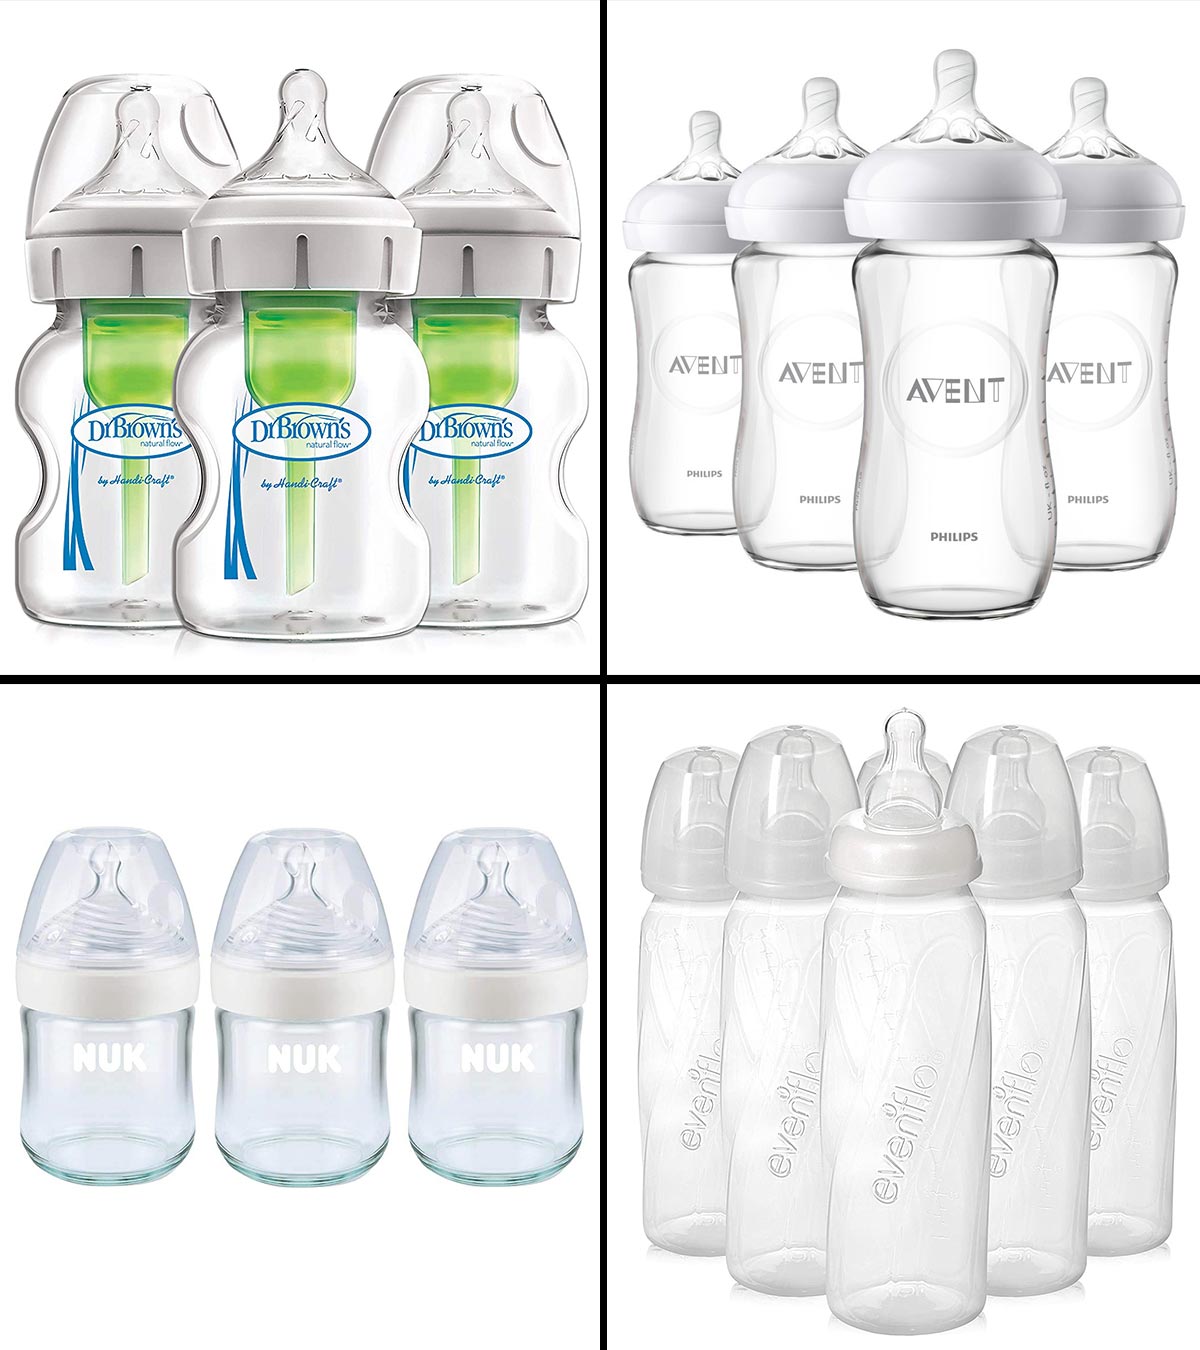 Best Way to Organize Baby Bottles